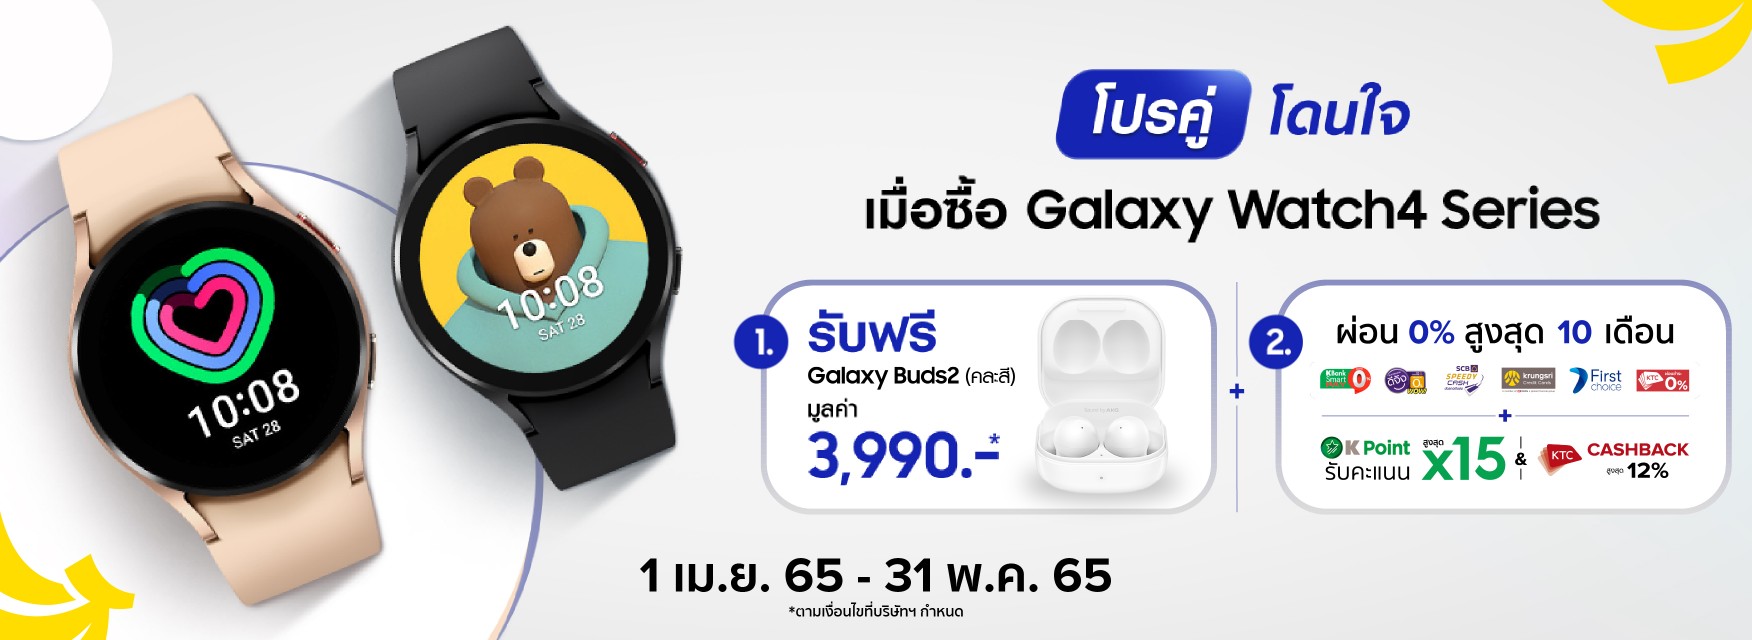 Samsung Galaxy Watch4 ฟรี! Galaxy Buds2